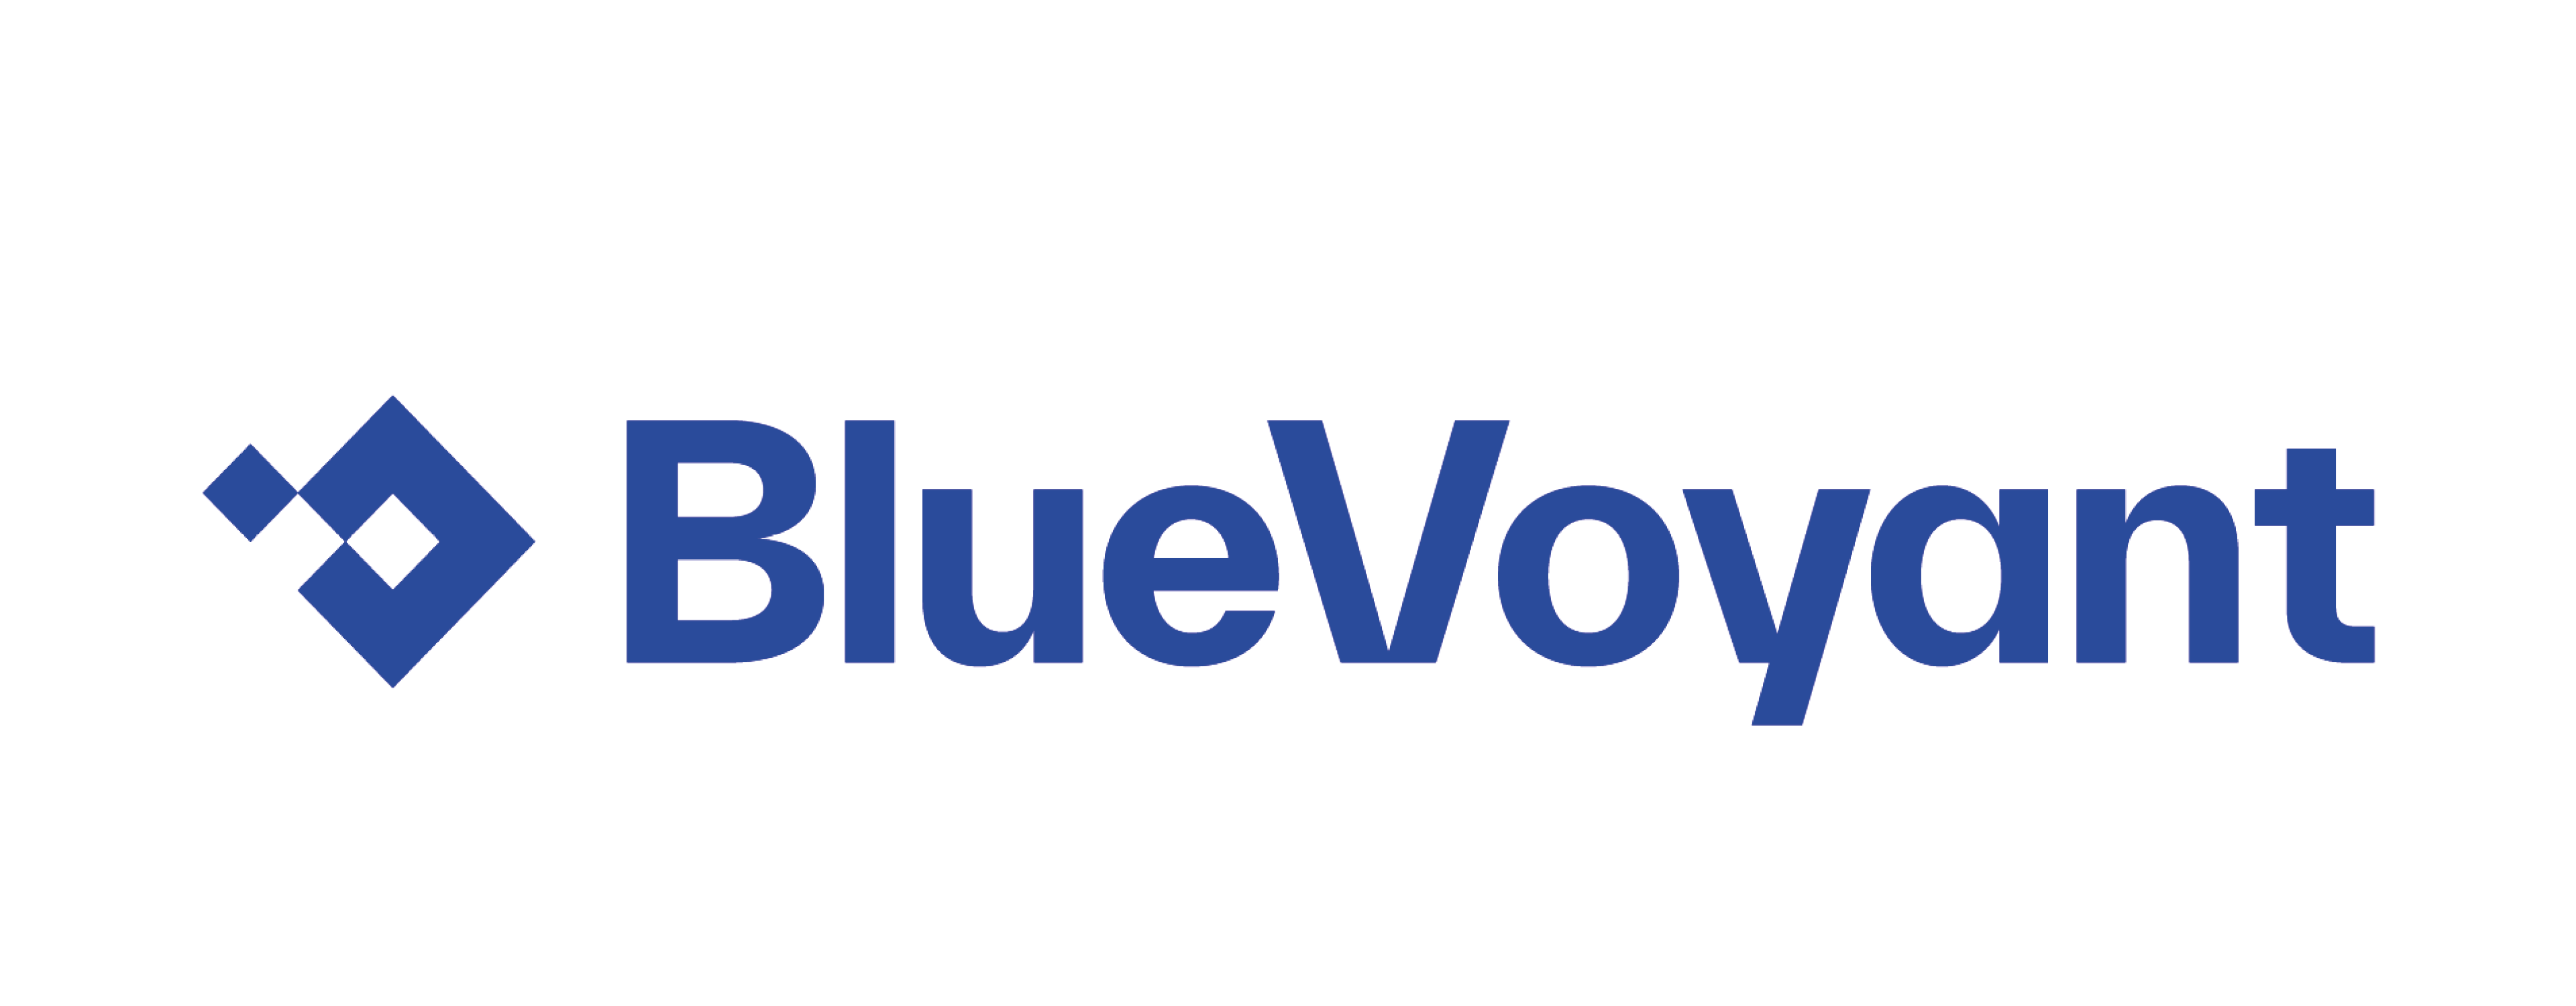 Blue Voyant logo